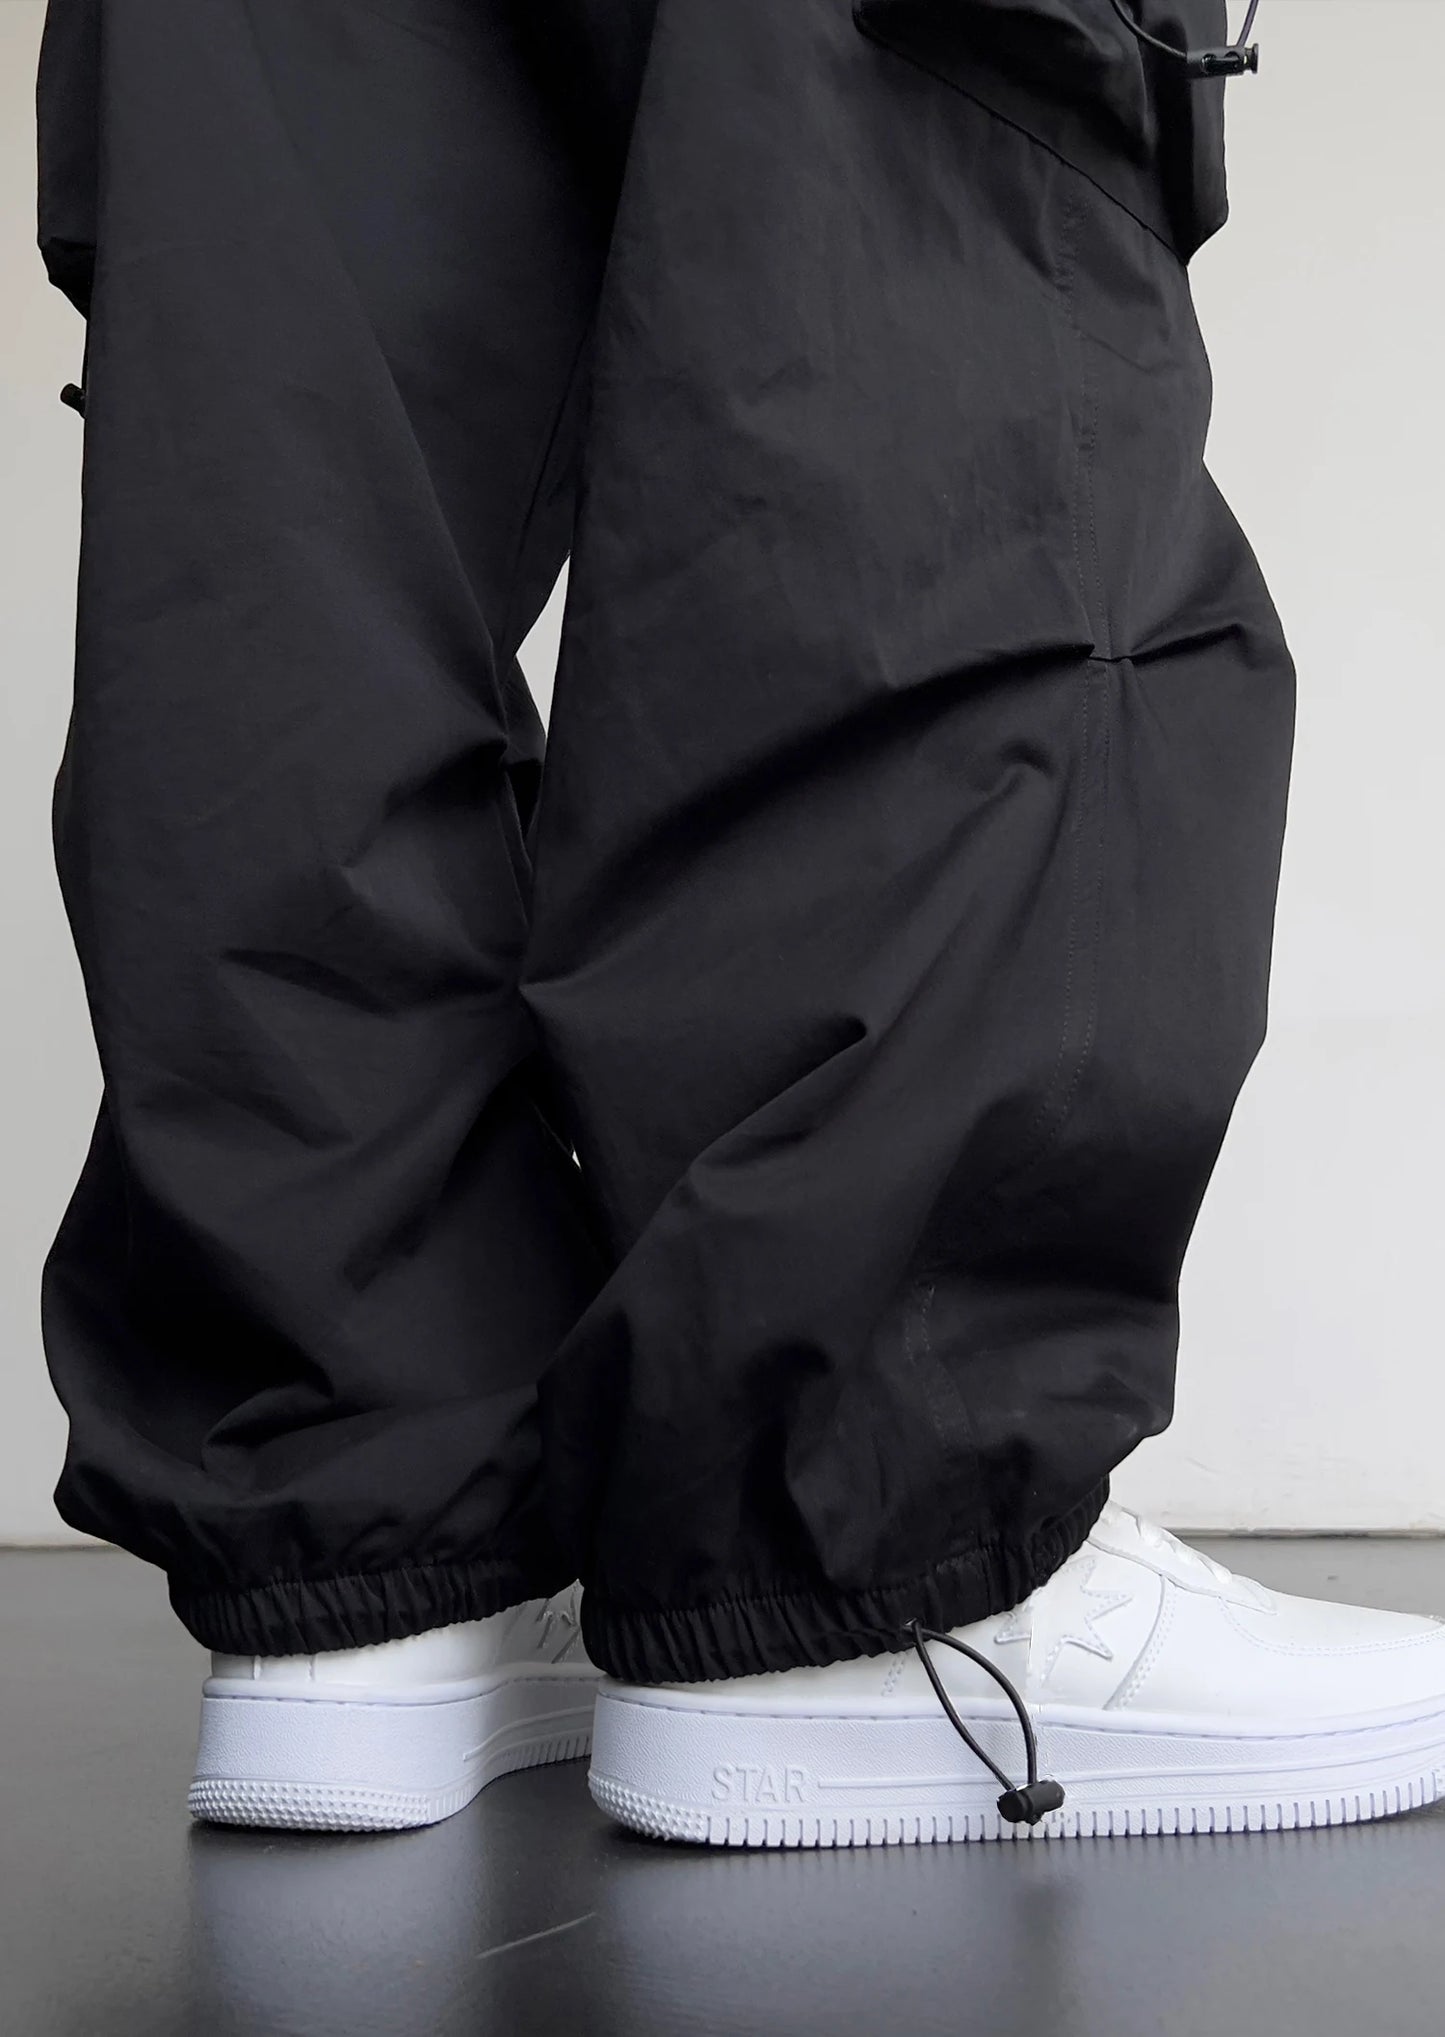 Pantalon Cargo unisexe, Streetwear, multi-poches, Harajuku, décontracté, jambes larges, ample, pour hommes et femmes, printemps et été